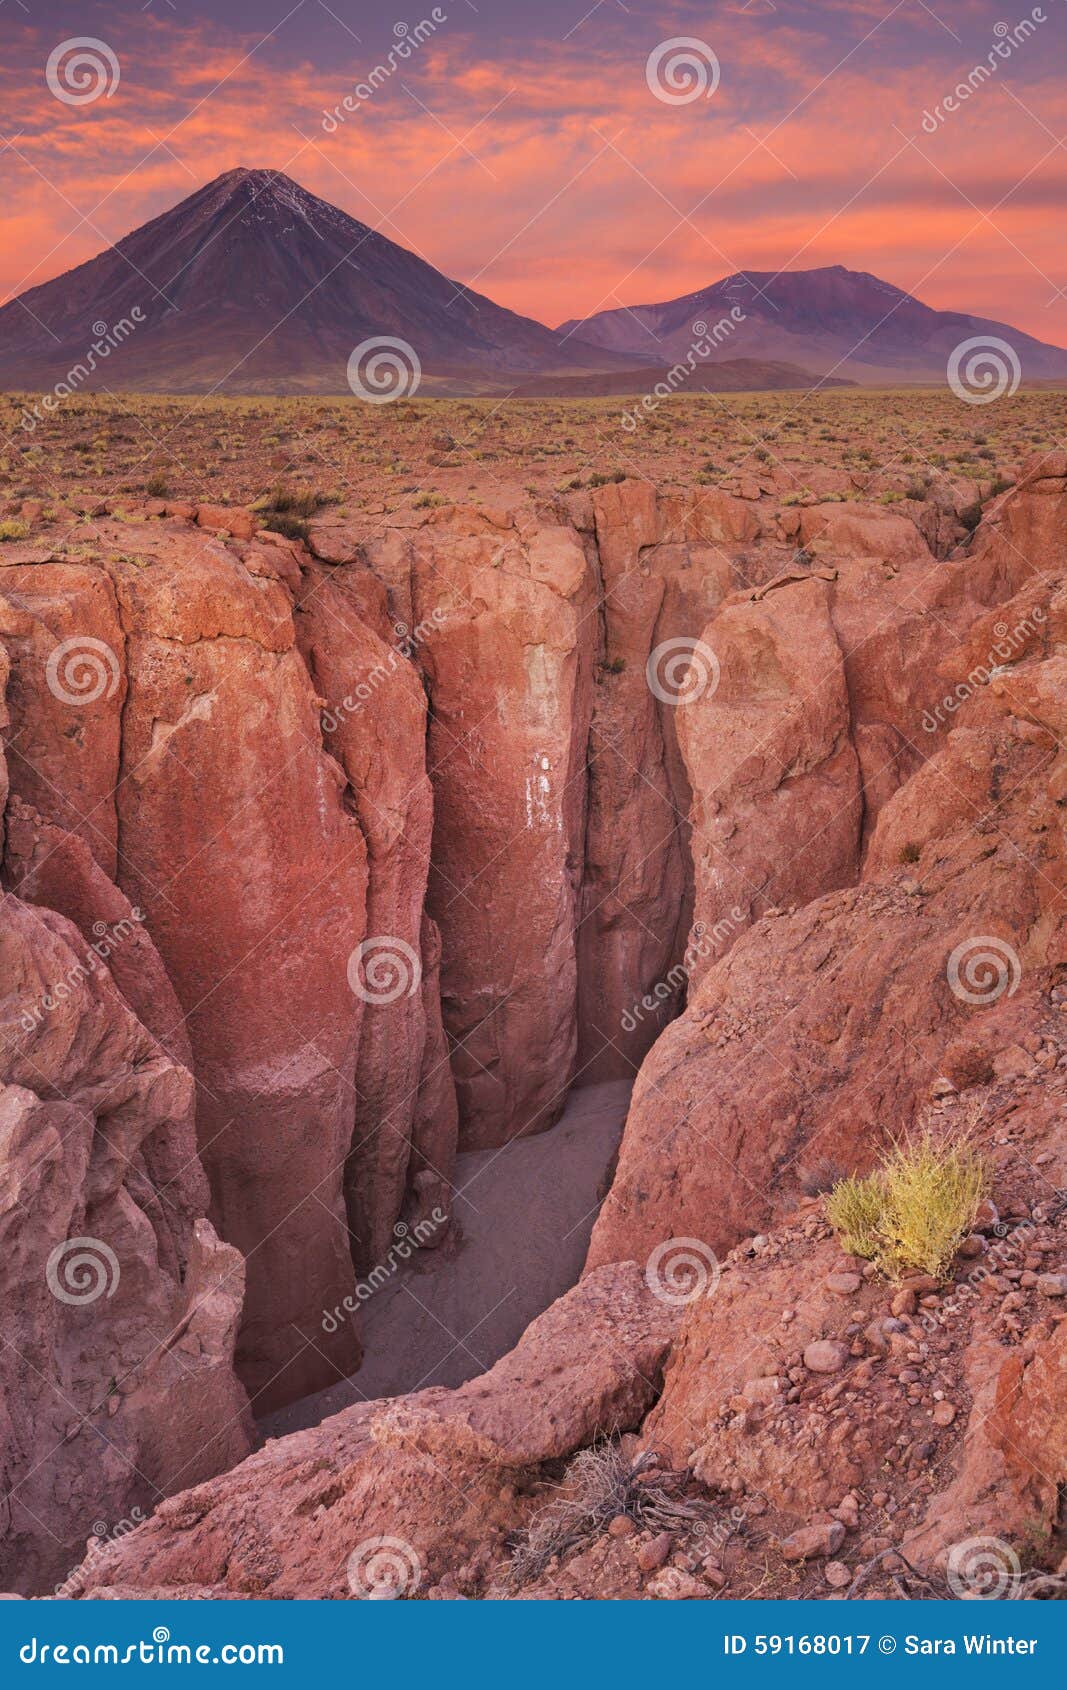 canyon and volcan licancabur, atacama desert, chile